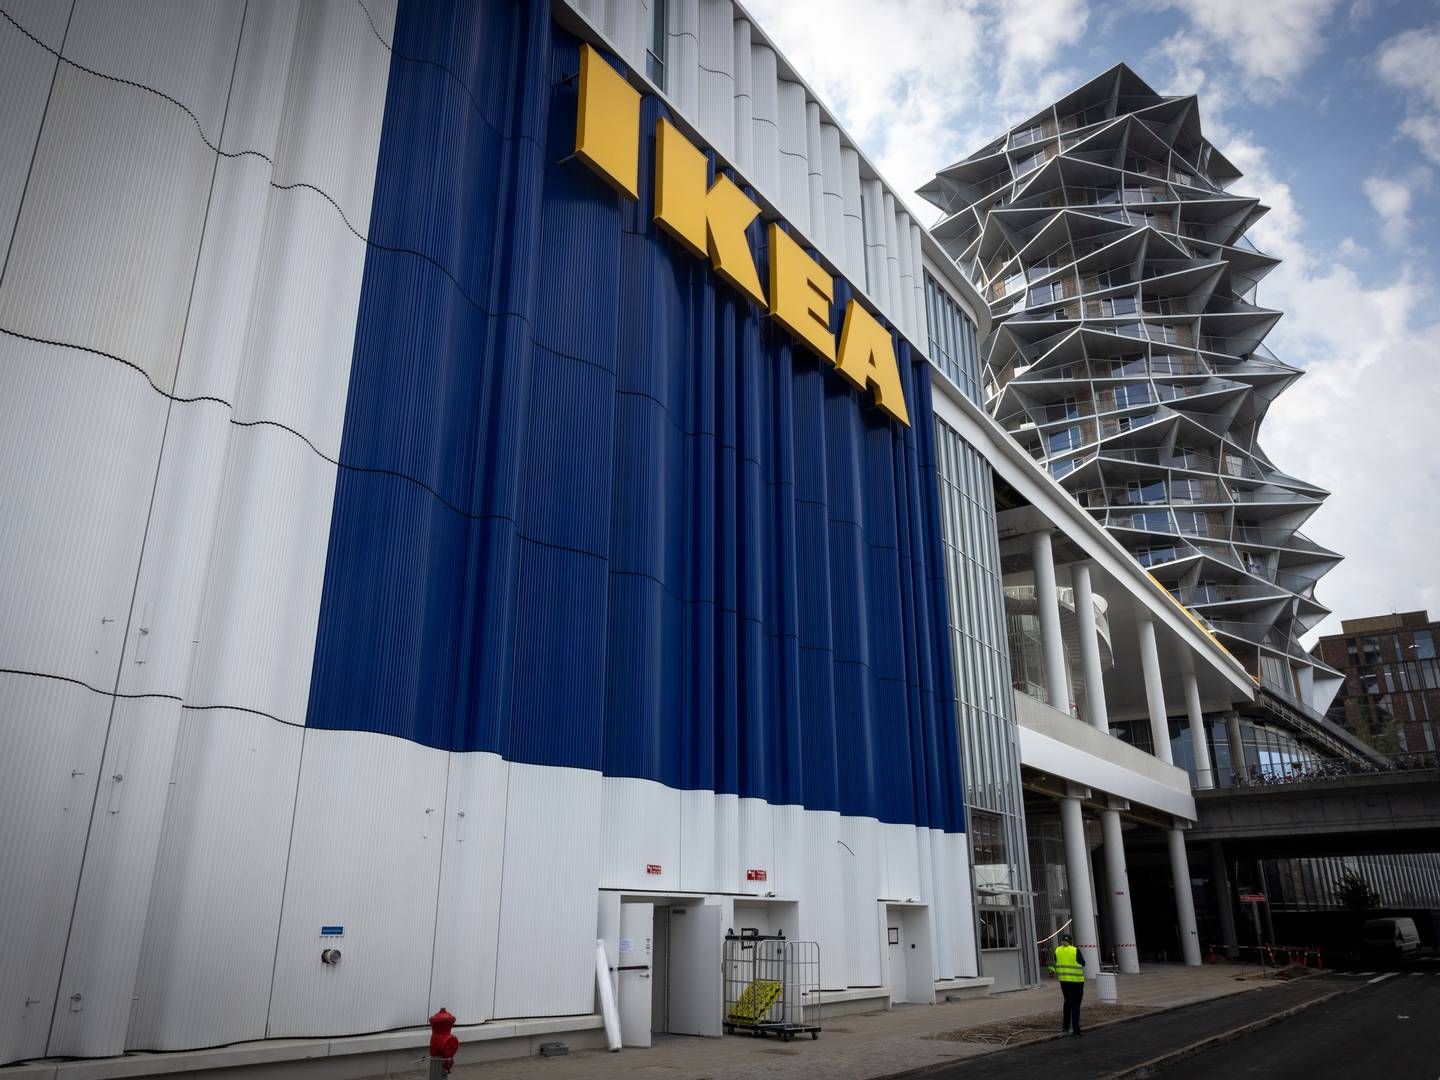 ”Vi har øget vores sikkerhedslagre for visse produkter og vil fortsætte denne tilgang for at imødekomme vores kunders behov,” udtaler Arvid Stigland, der er pressechef i den svenske møbelkoncern Ikea. | Foto: Nichlas Pollier